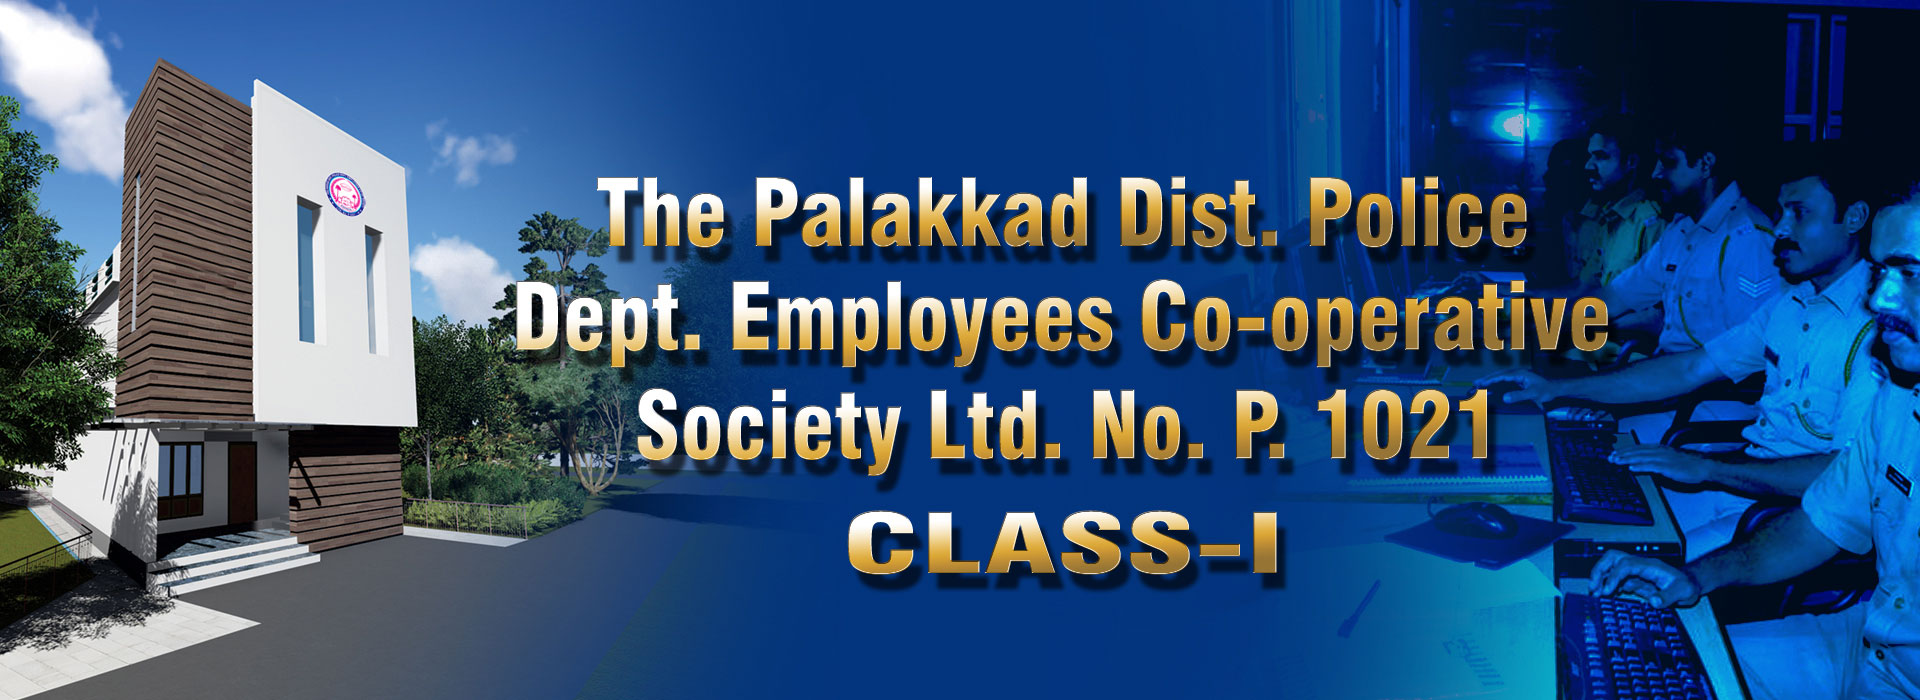 Police Society Palakkad